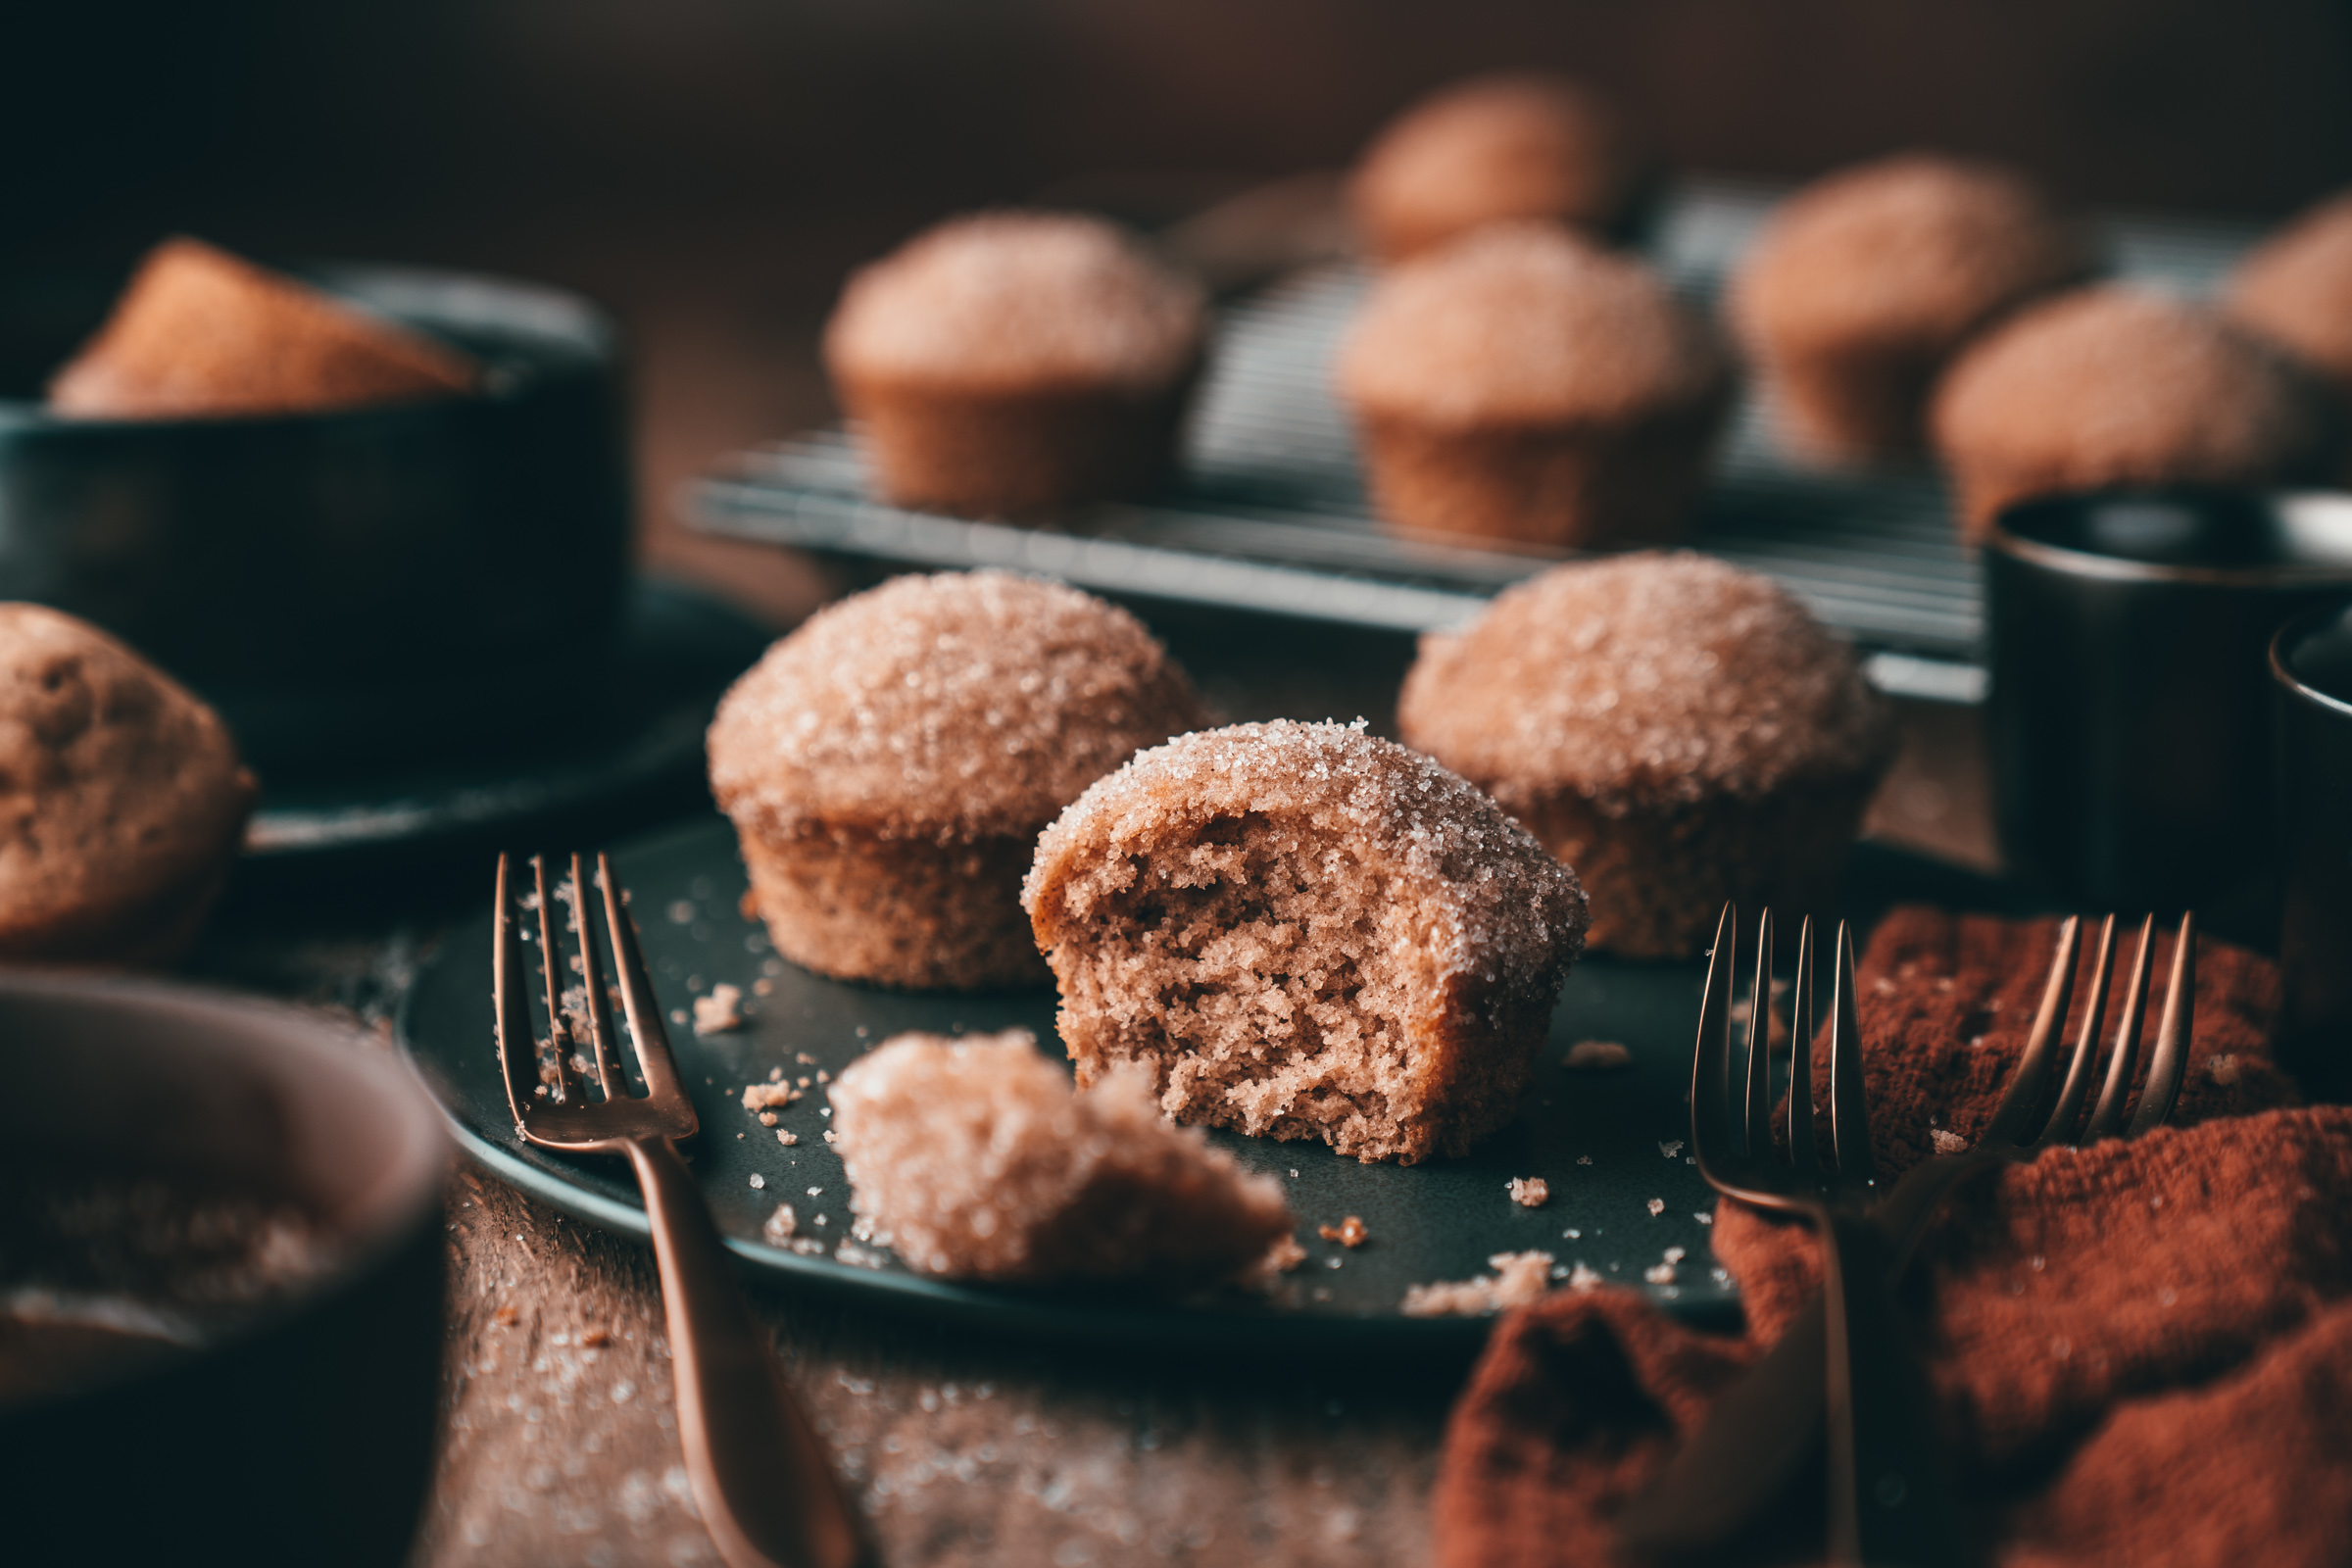 Zimt Zucker Muffins 18 | Zimt-Zucker ... für mich eine unschlagbare Kombination. Ein Crêpe mit Zimt & Zucker ist in den Wintermonaten Pflichtprogramm! Schon seit einigen Jahren ist Zimt für uns aber ein Gewürz, das uns ganzjährig begleitet - Zimt ist viel zu lecker, um ihn nur in der Weihnachtszeit zu feiern. Warum also nicht den Geschmack von Zimt & Zucker mit einem Muffin kombinieren?! Der ist super einfach und schnell gebacken und mit seiner süßen Oberseite ein absolutes Highlight. Meet our Zimt-Zucker Muffin - ihr werdet ihn lieben!